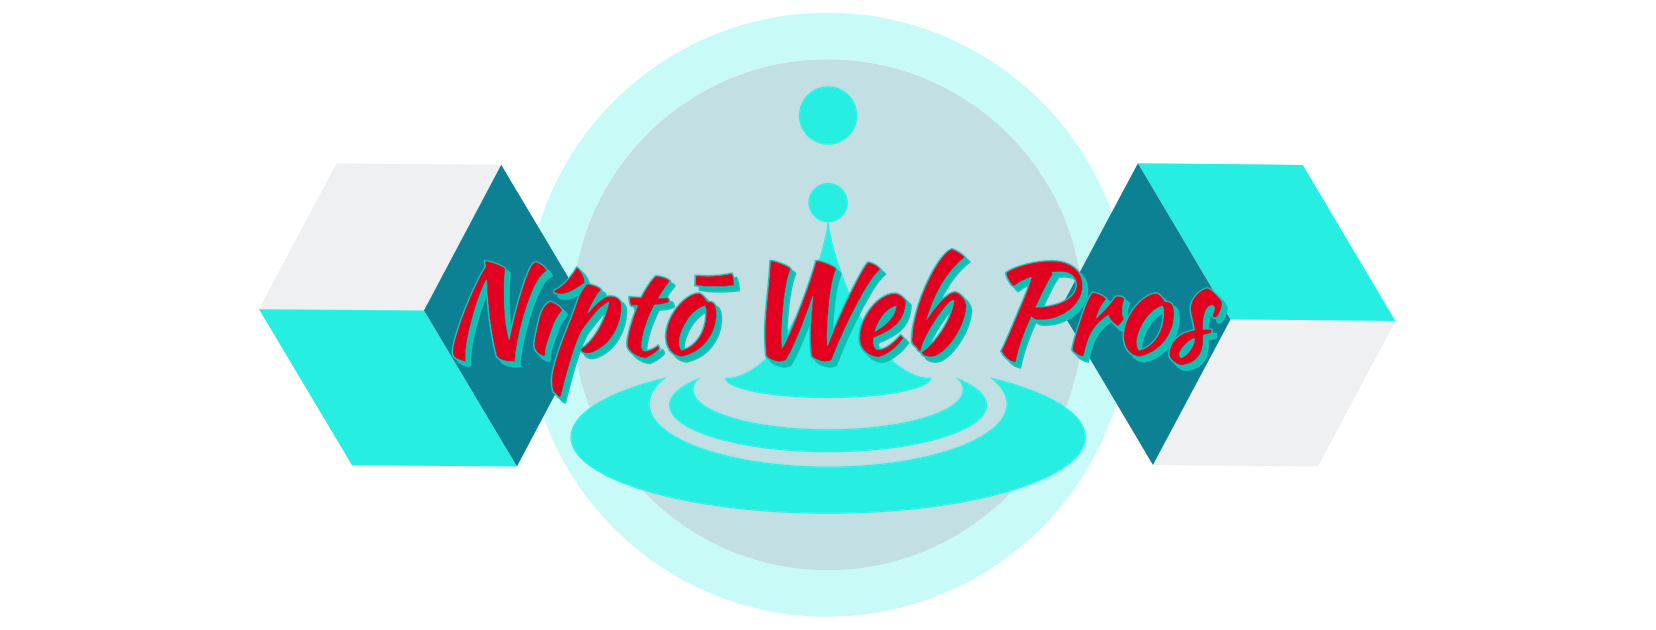 Níptō Web Pros logo website design SEO Concord, CA